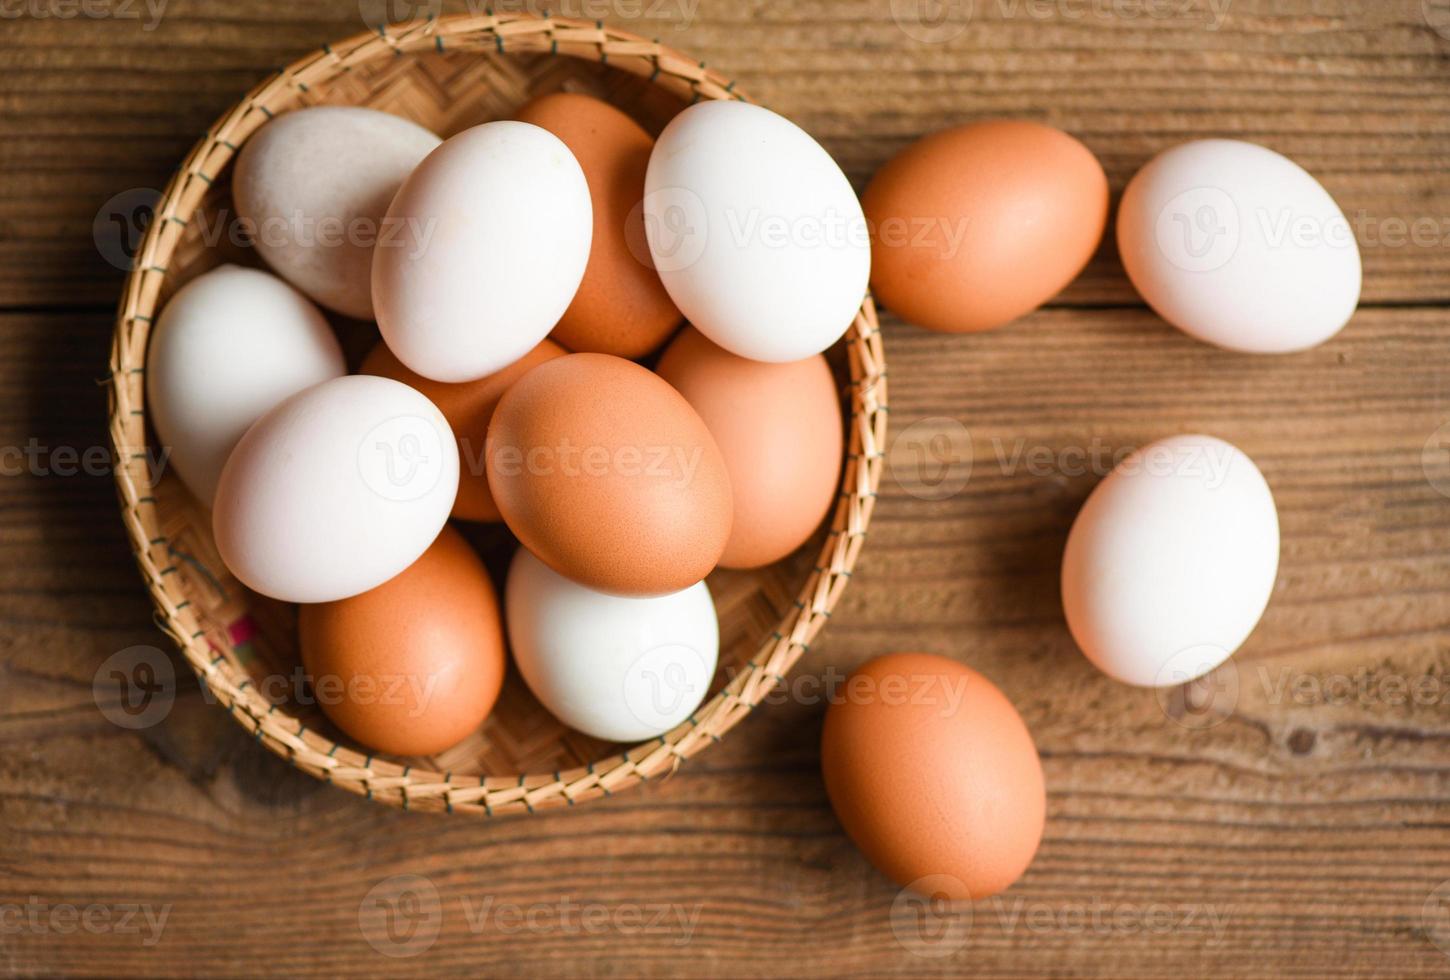 uova di gallina e uova di anatra raccolgono da prodotti agricoli naturali in un concetto di alimentazione sana del cestino, uova fresche. foto